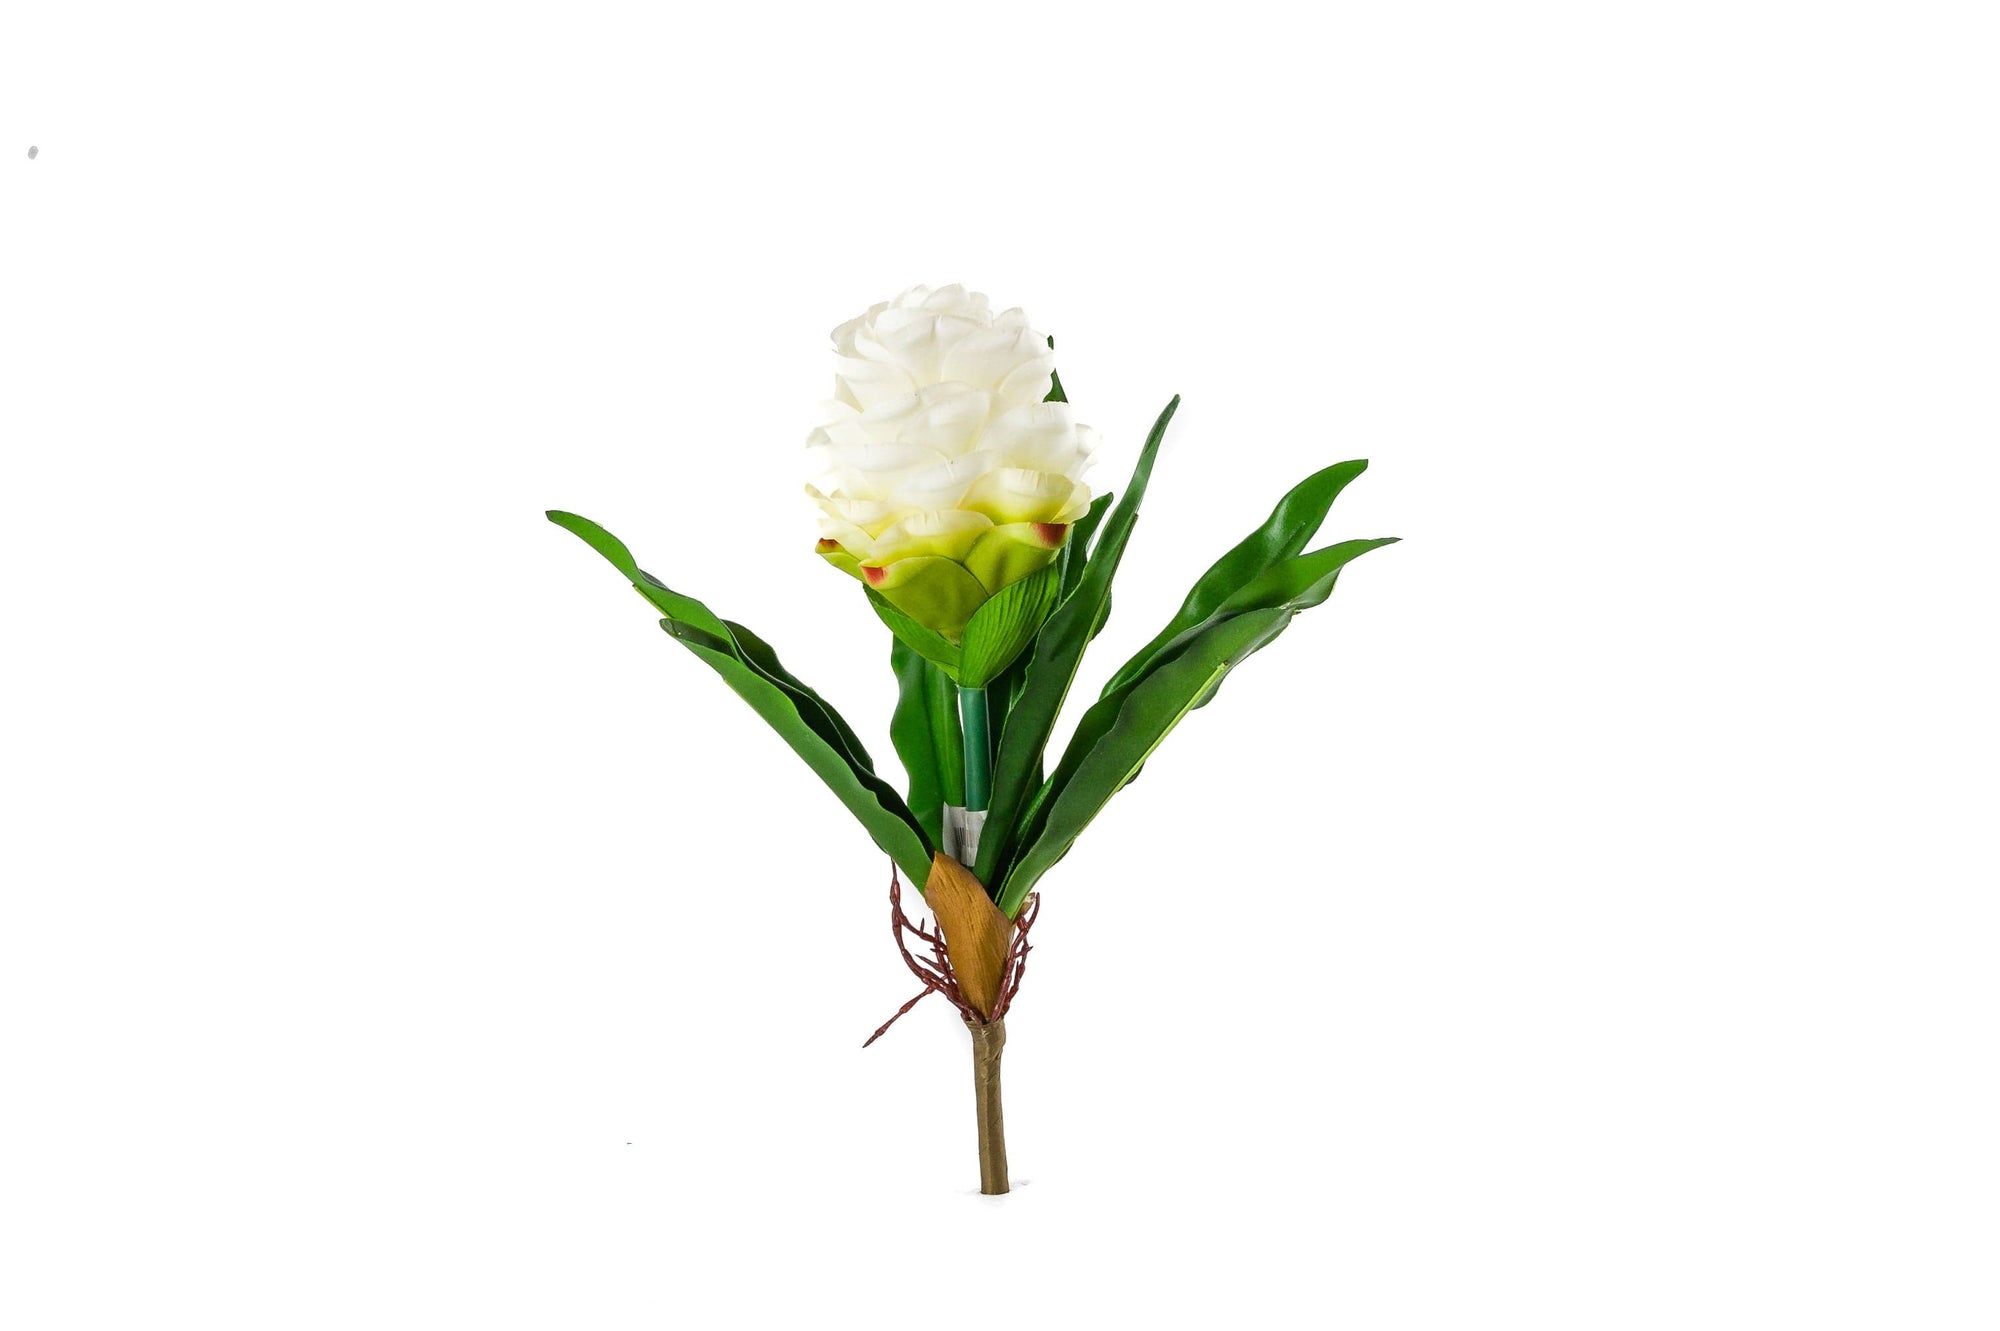 Exotic Ornamental Flowers - Fervor + Hue